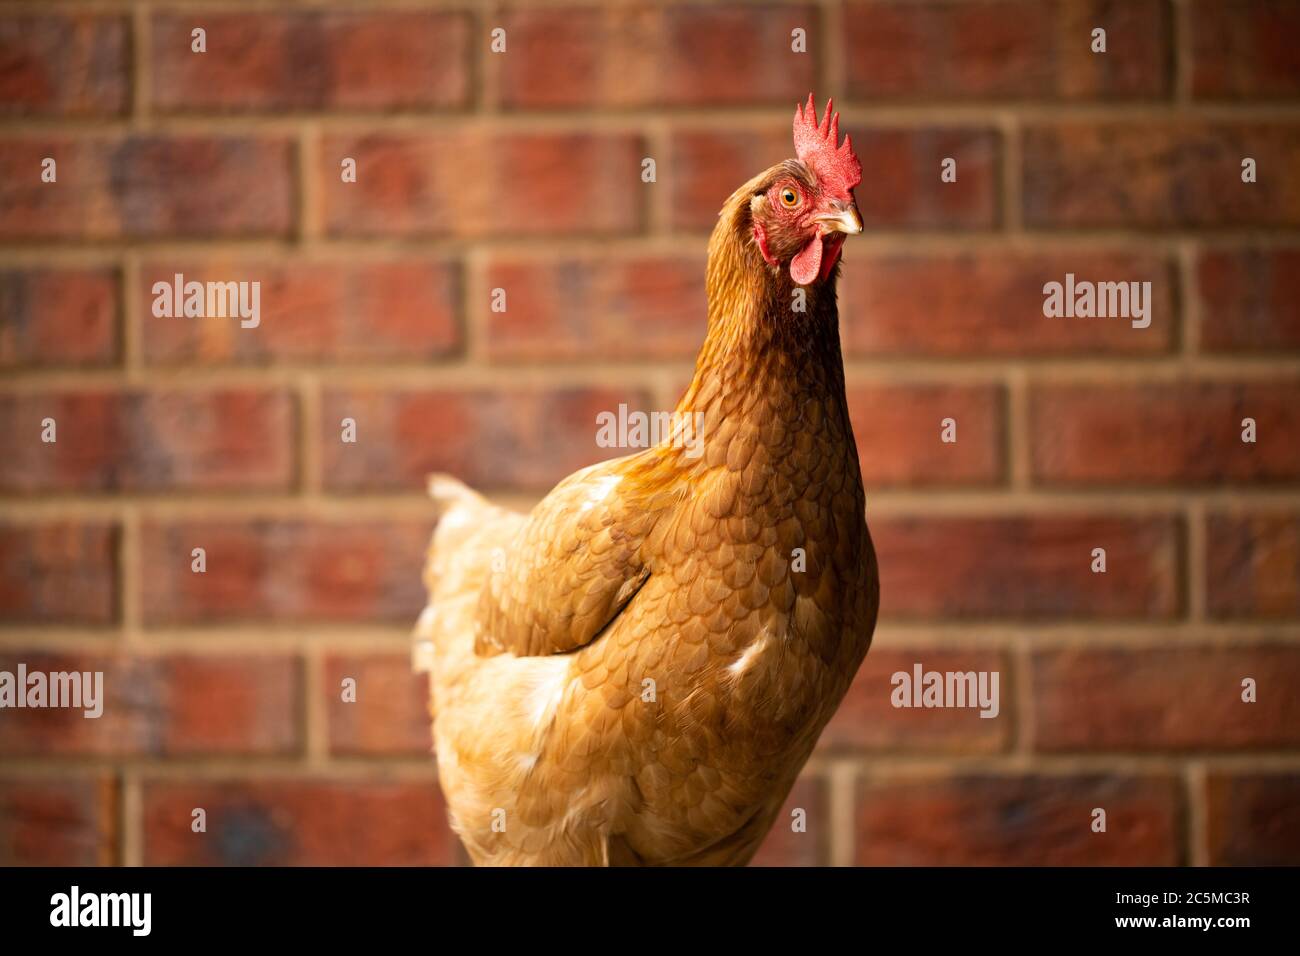 Un huevo que pone libre rango de pollo Isa marrón con ladrillo rojo en la parte posterior de la tierra Foto de stock